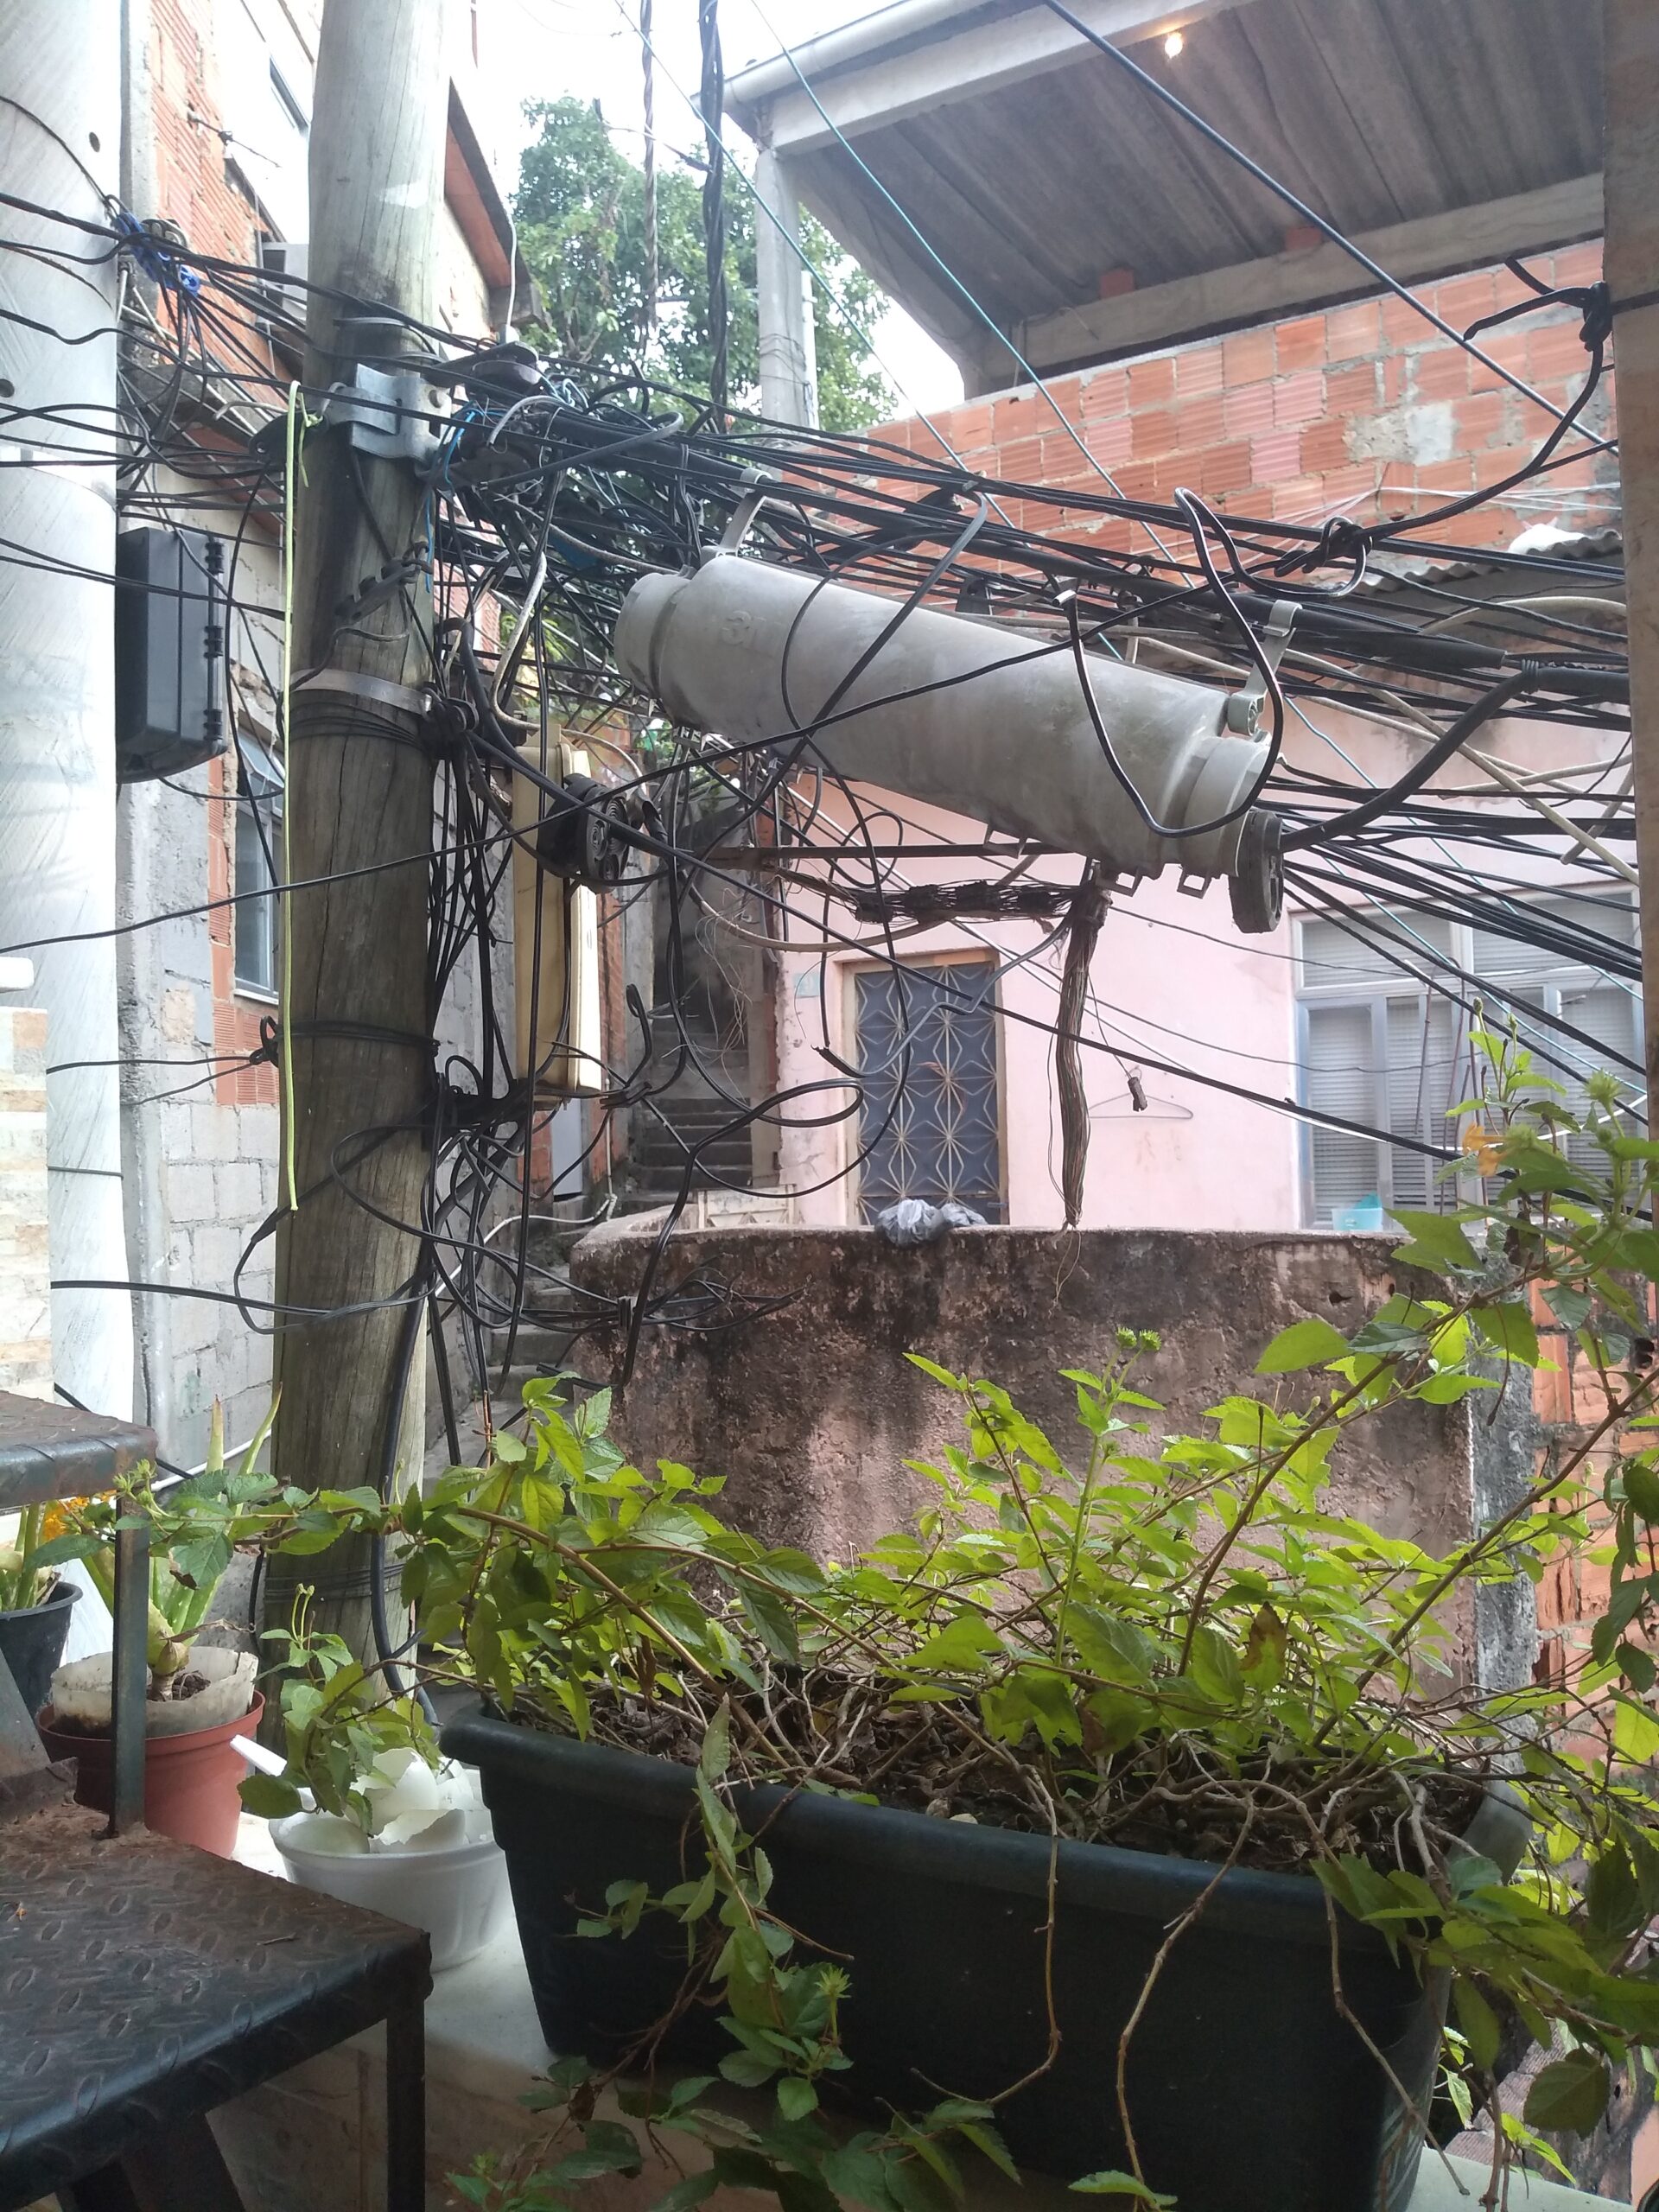 Emaranhado de fios em um tronco de árvore usado como poste bem próximo à casa de moradores, no Morro do Sereno, representa risco de incêndios e choques. Foto por Karina Figueiredo